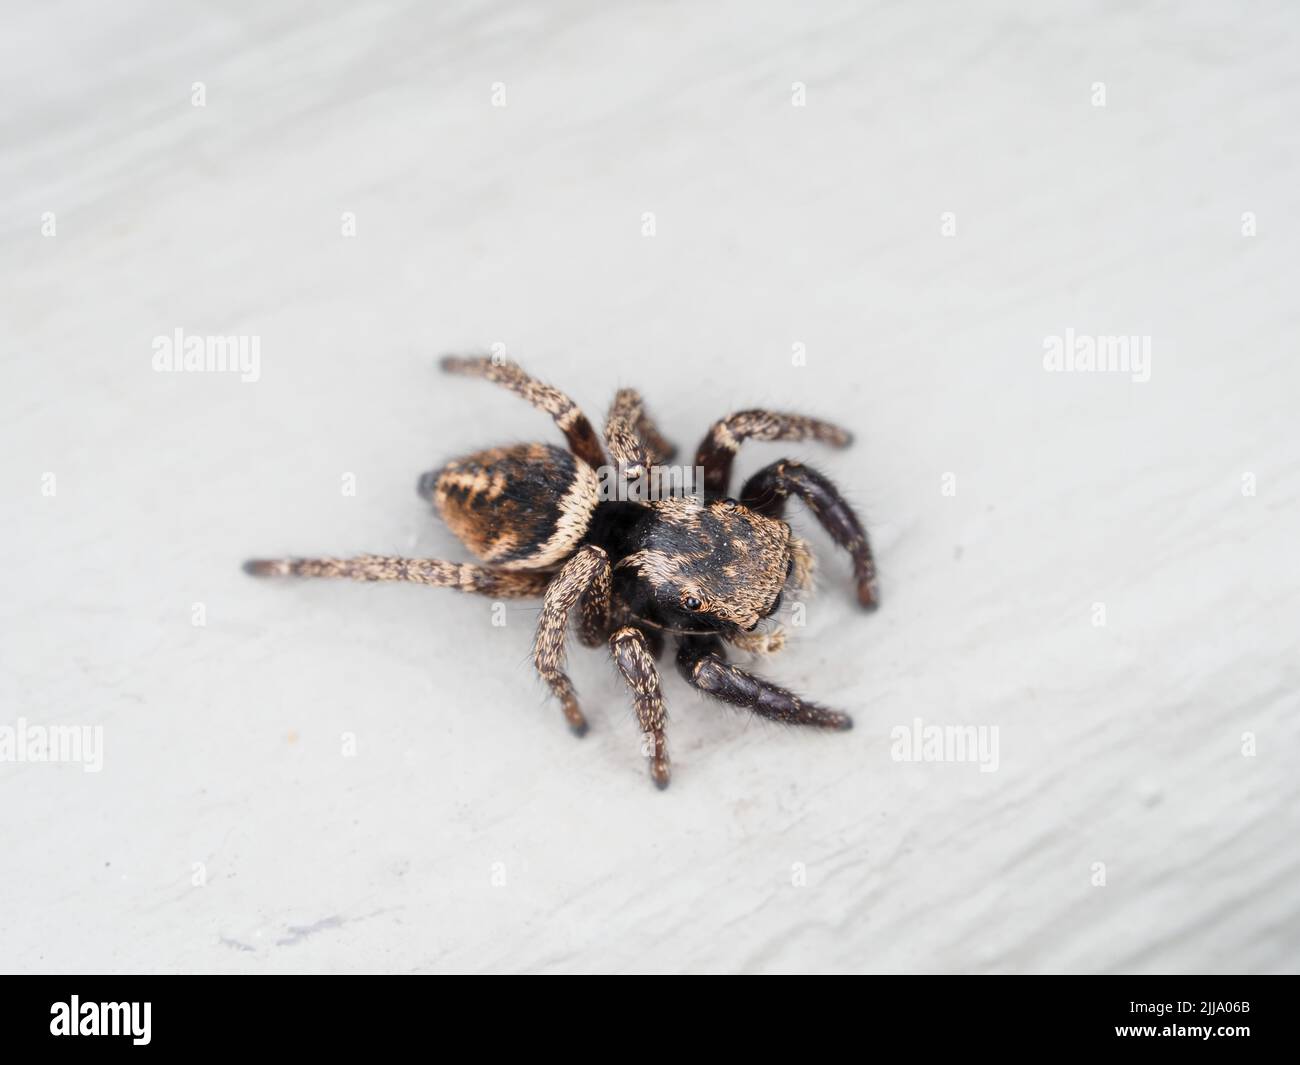 Makrofoto einer kleinen springenden Spinne, wahrscheinlich Habronattus sp. Stockfoto